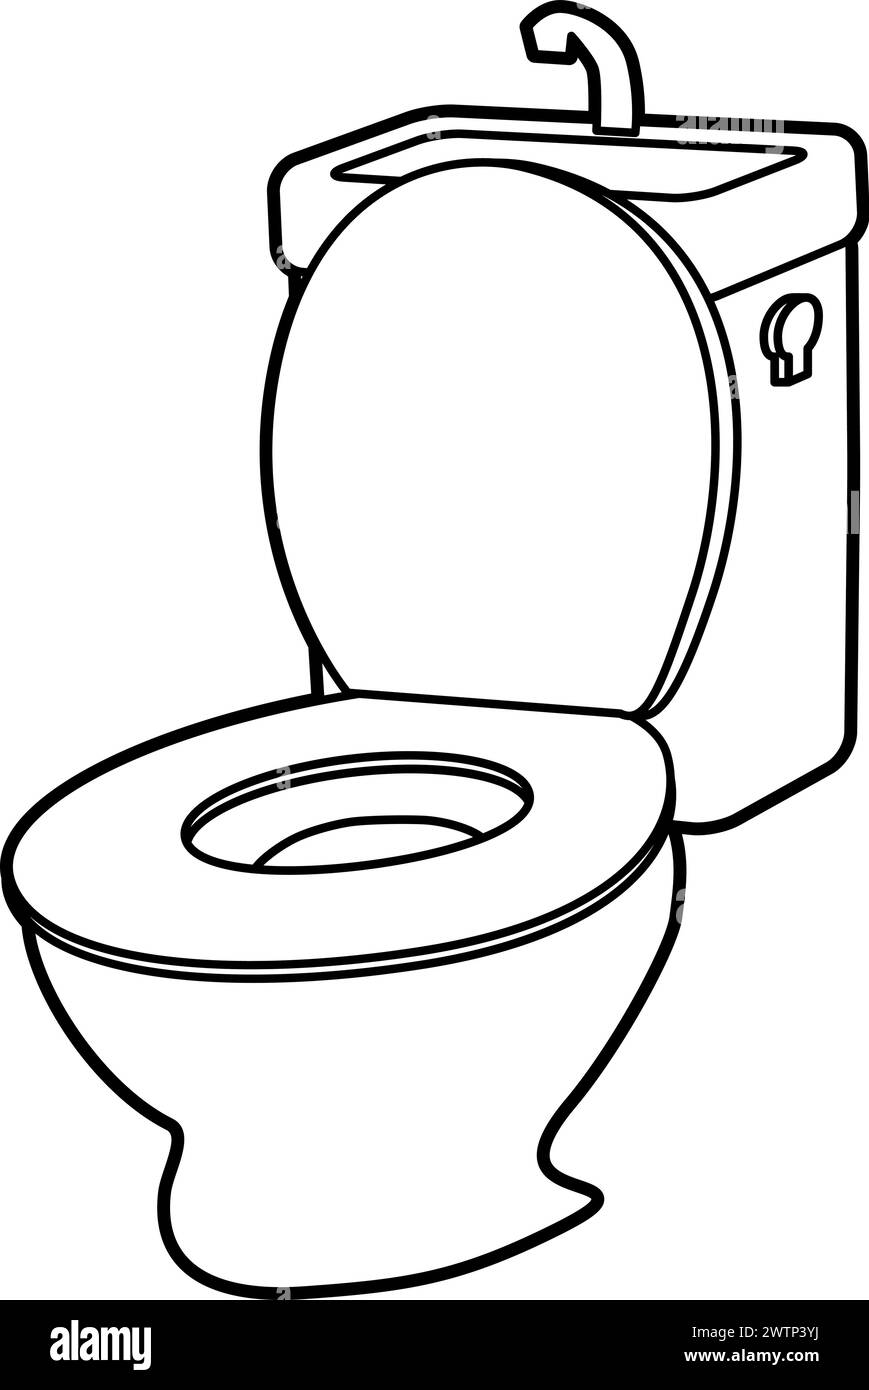 Illustrazione di toilet.Vector facile da modificare. Illustrazione Vettoriale